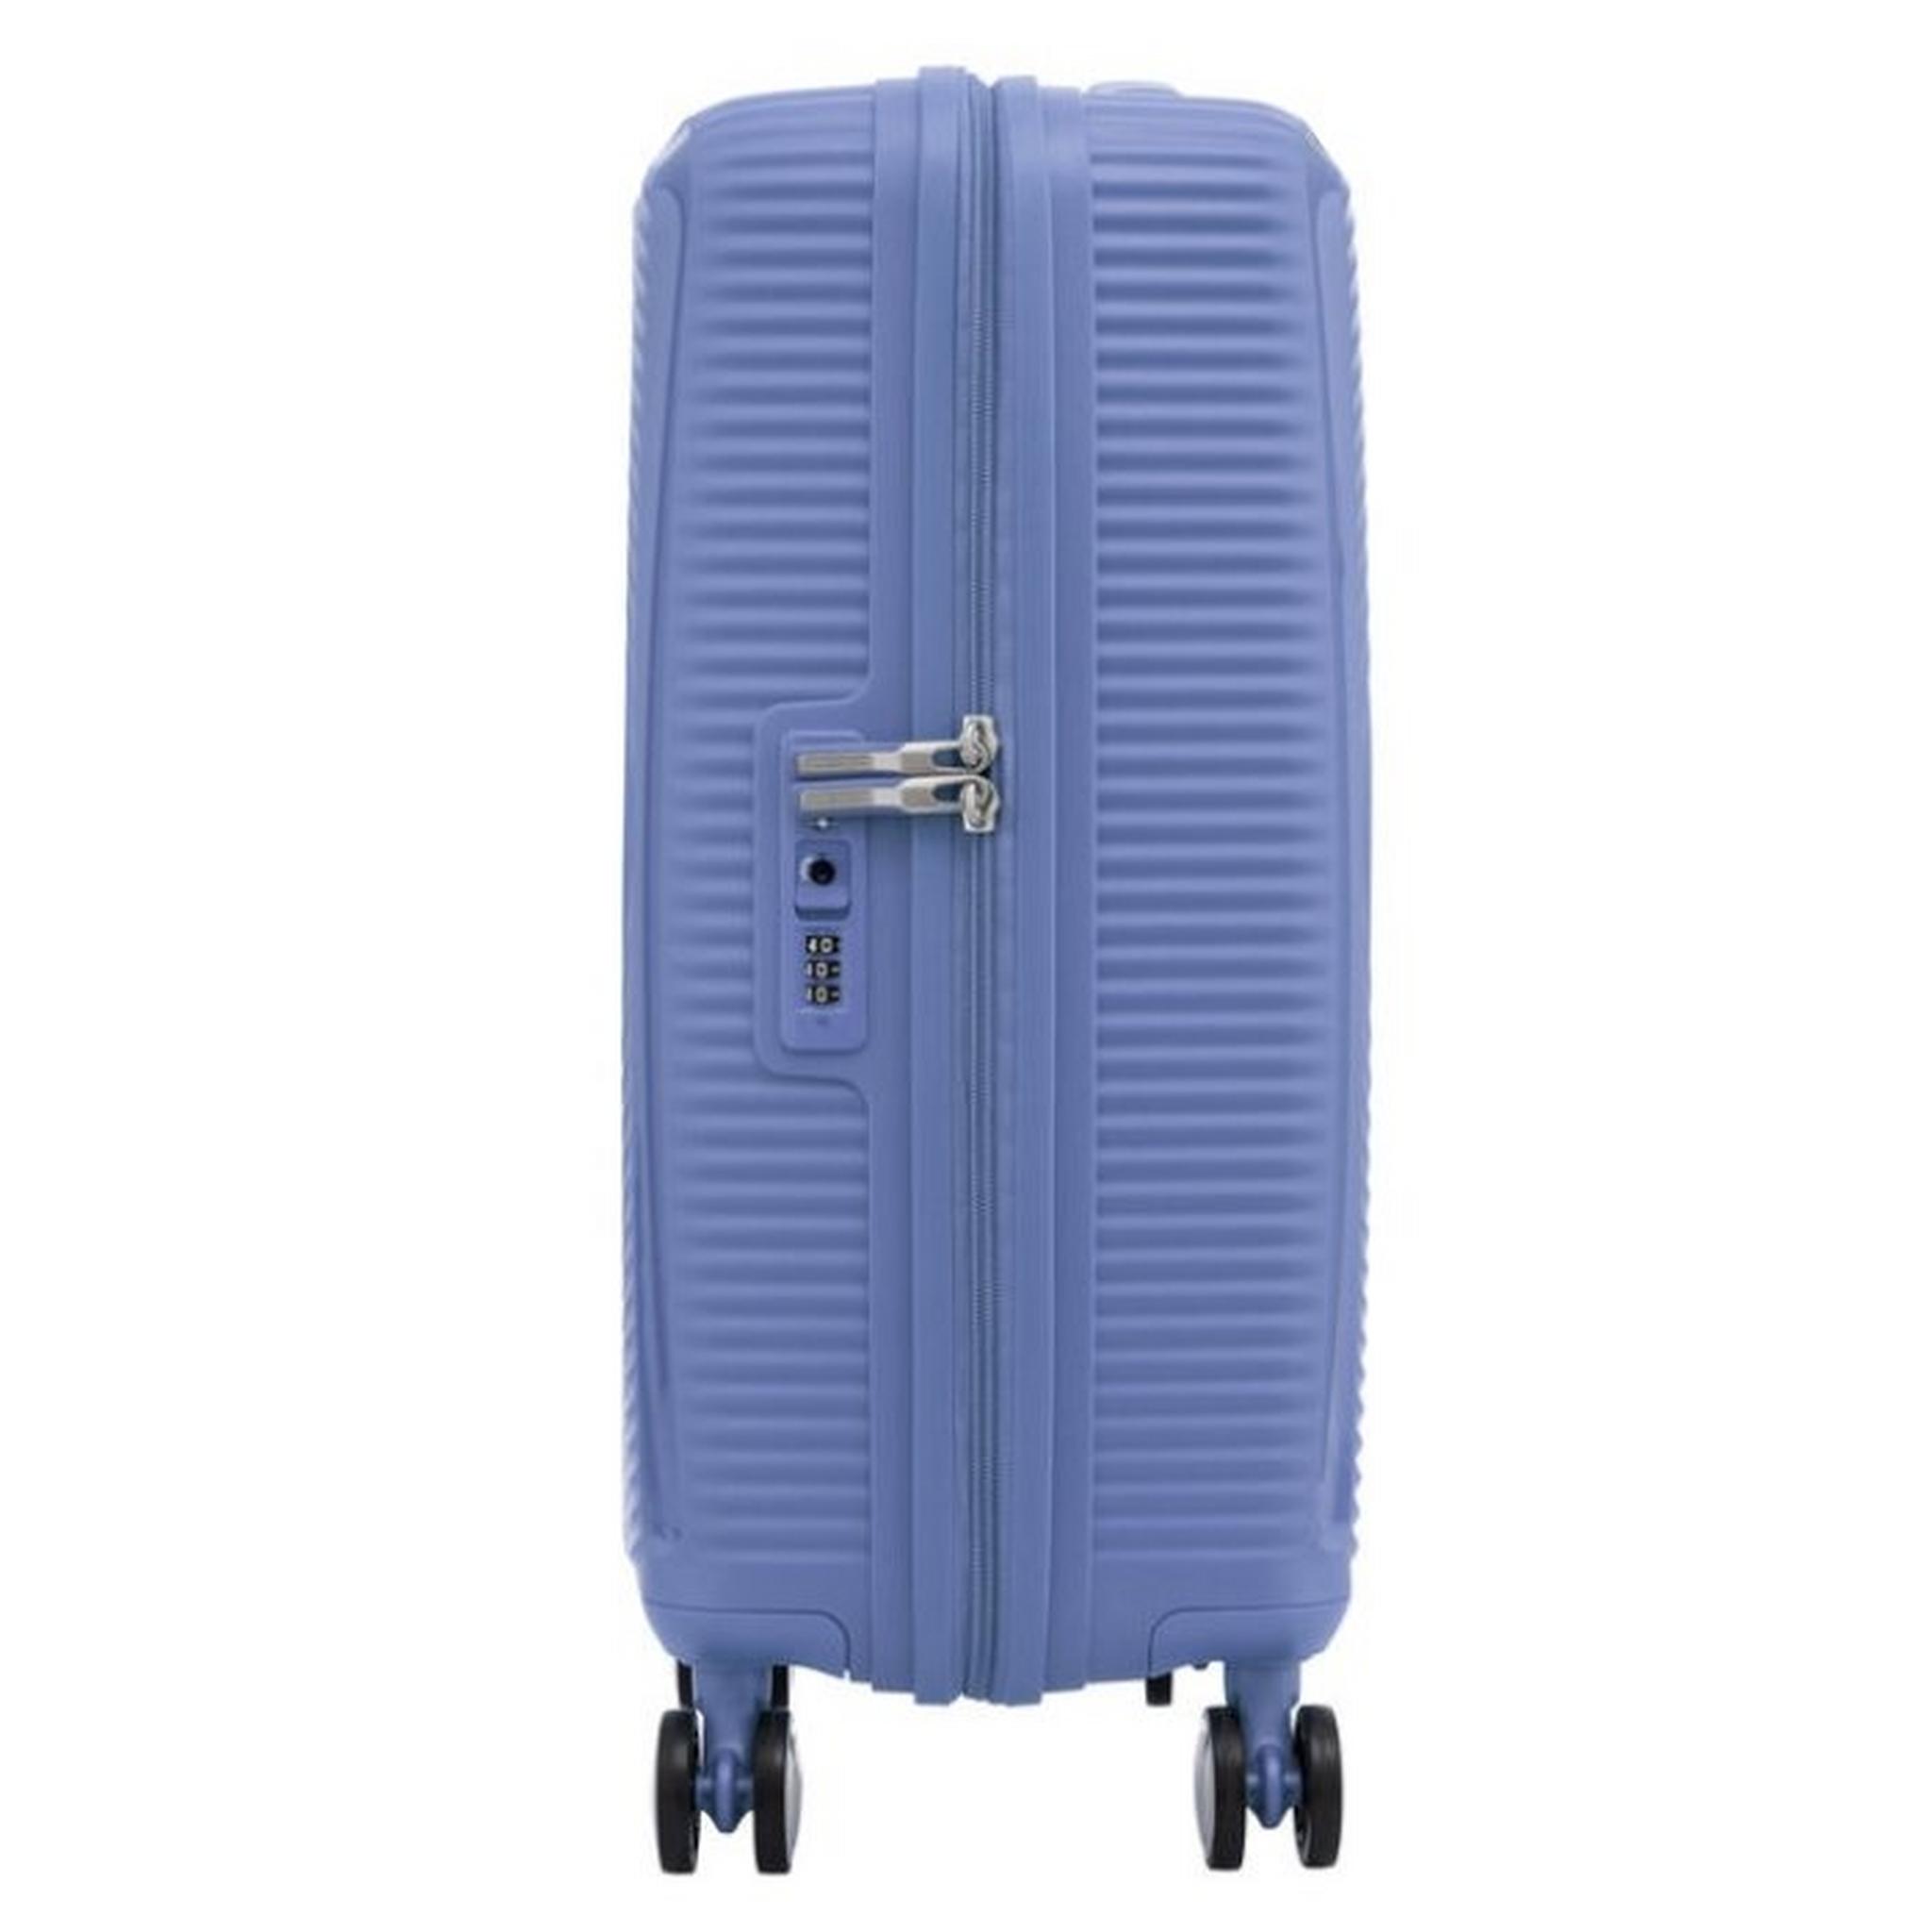 حقيبة السفر الصلبة كوريو من أمريكان توريستر ٥٥ سم - أزرق